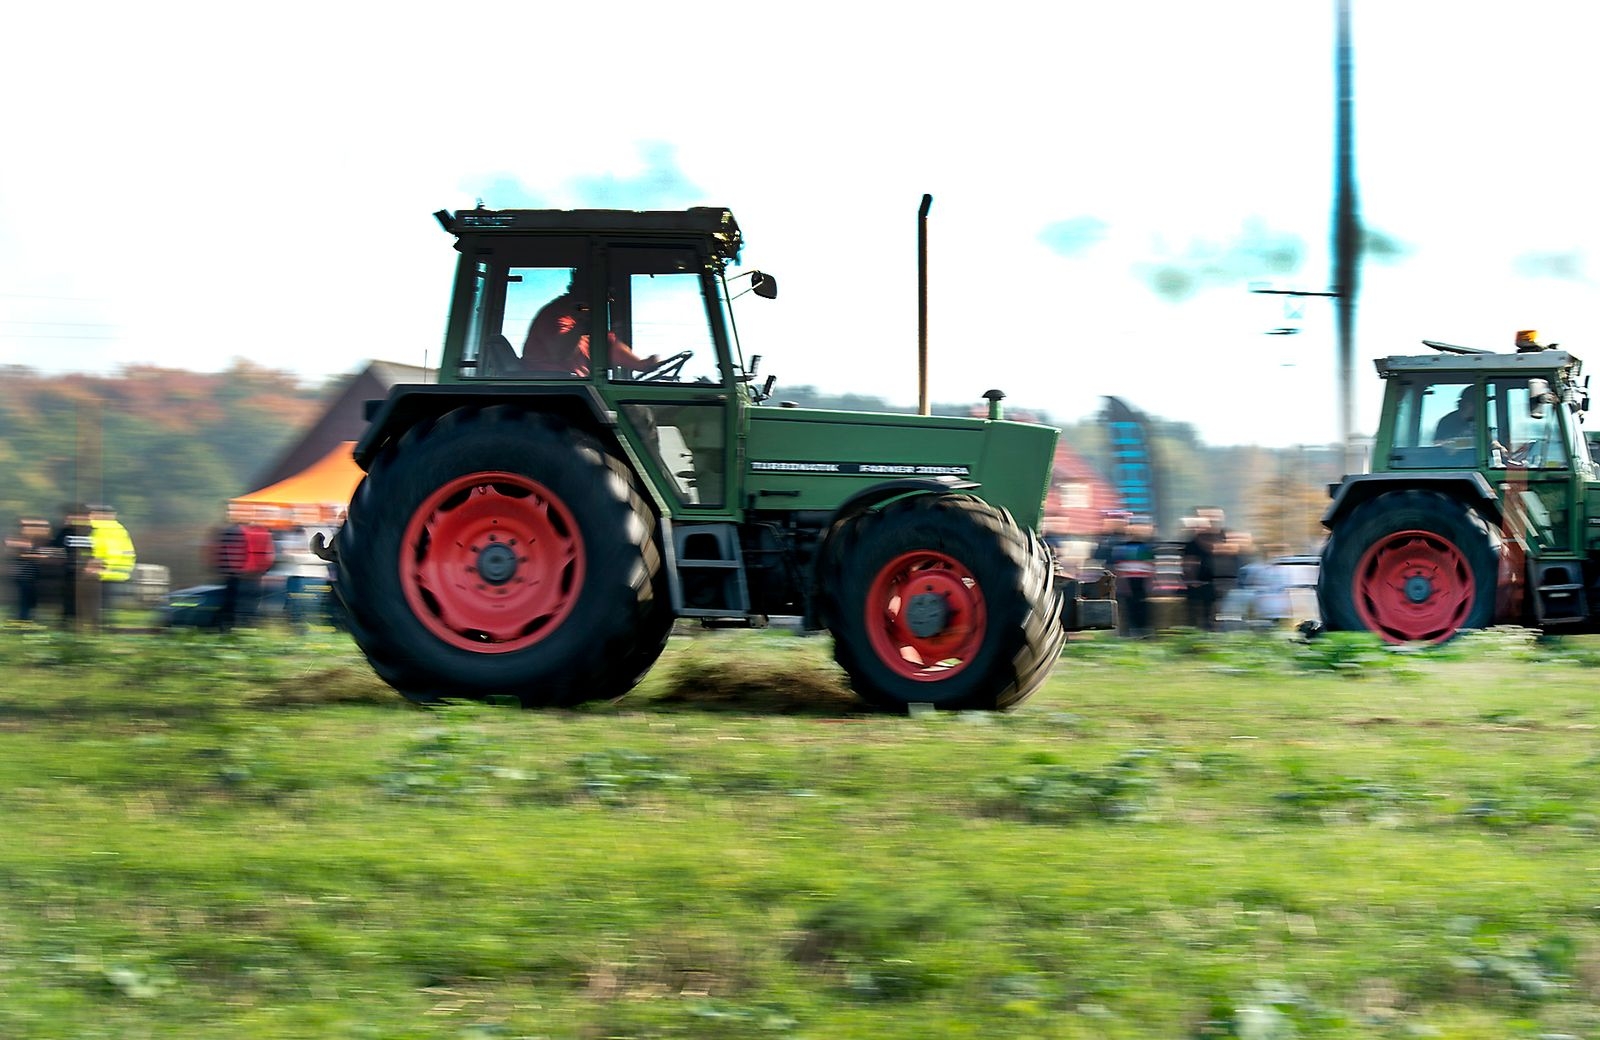 En av av de två mindre traktorerna av märket Fendt.